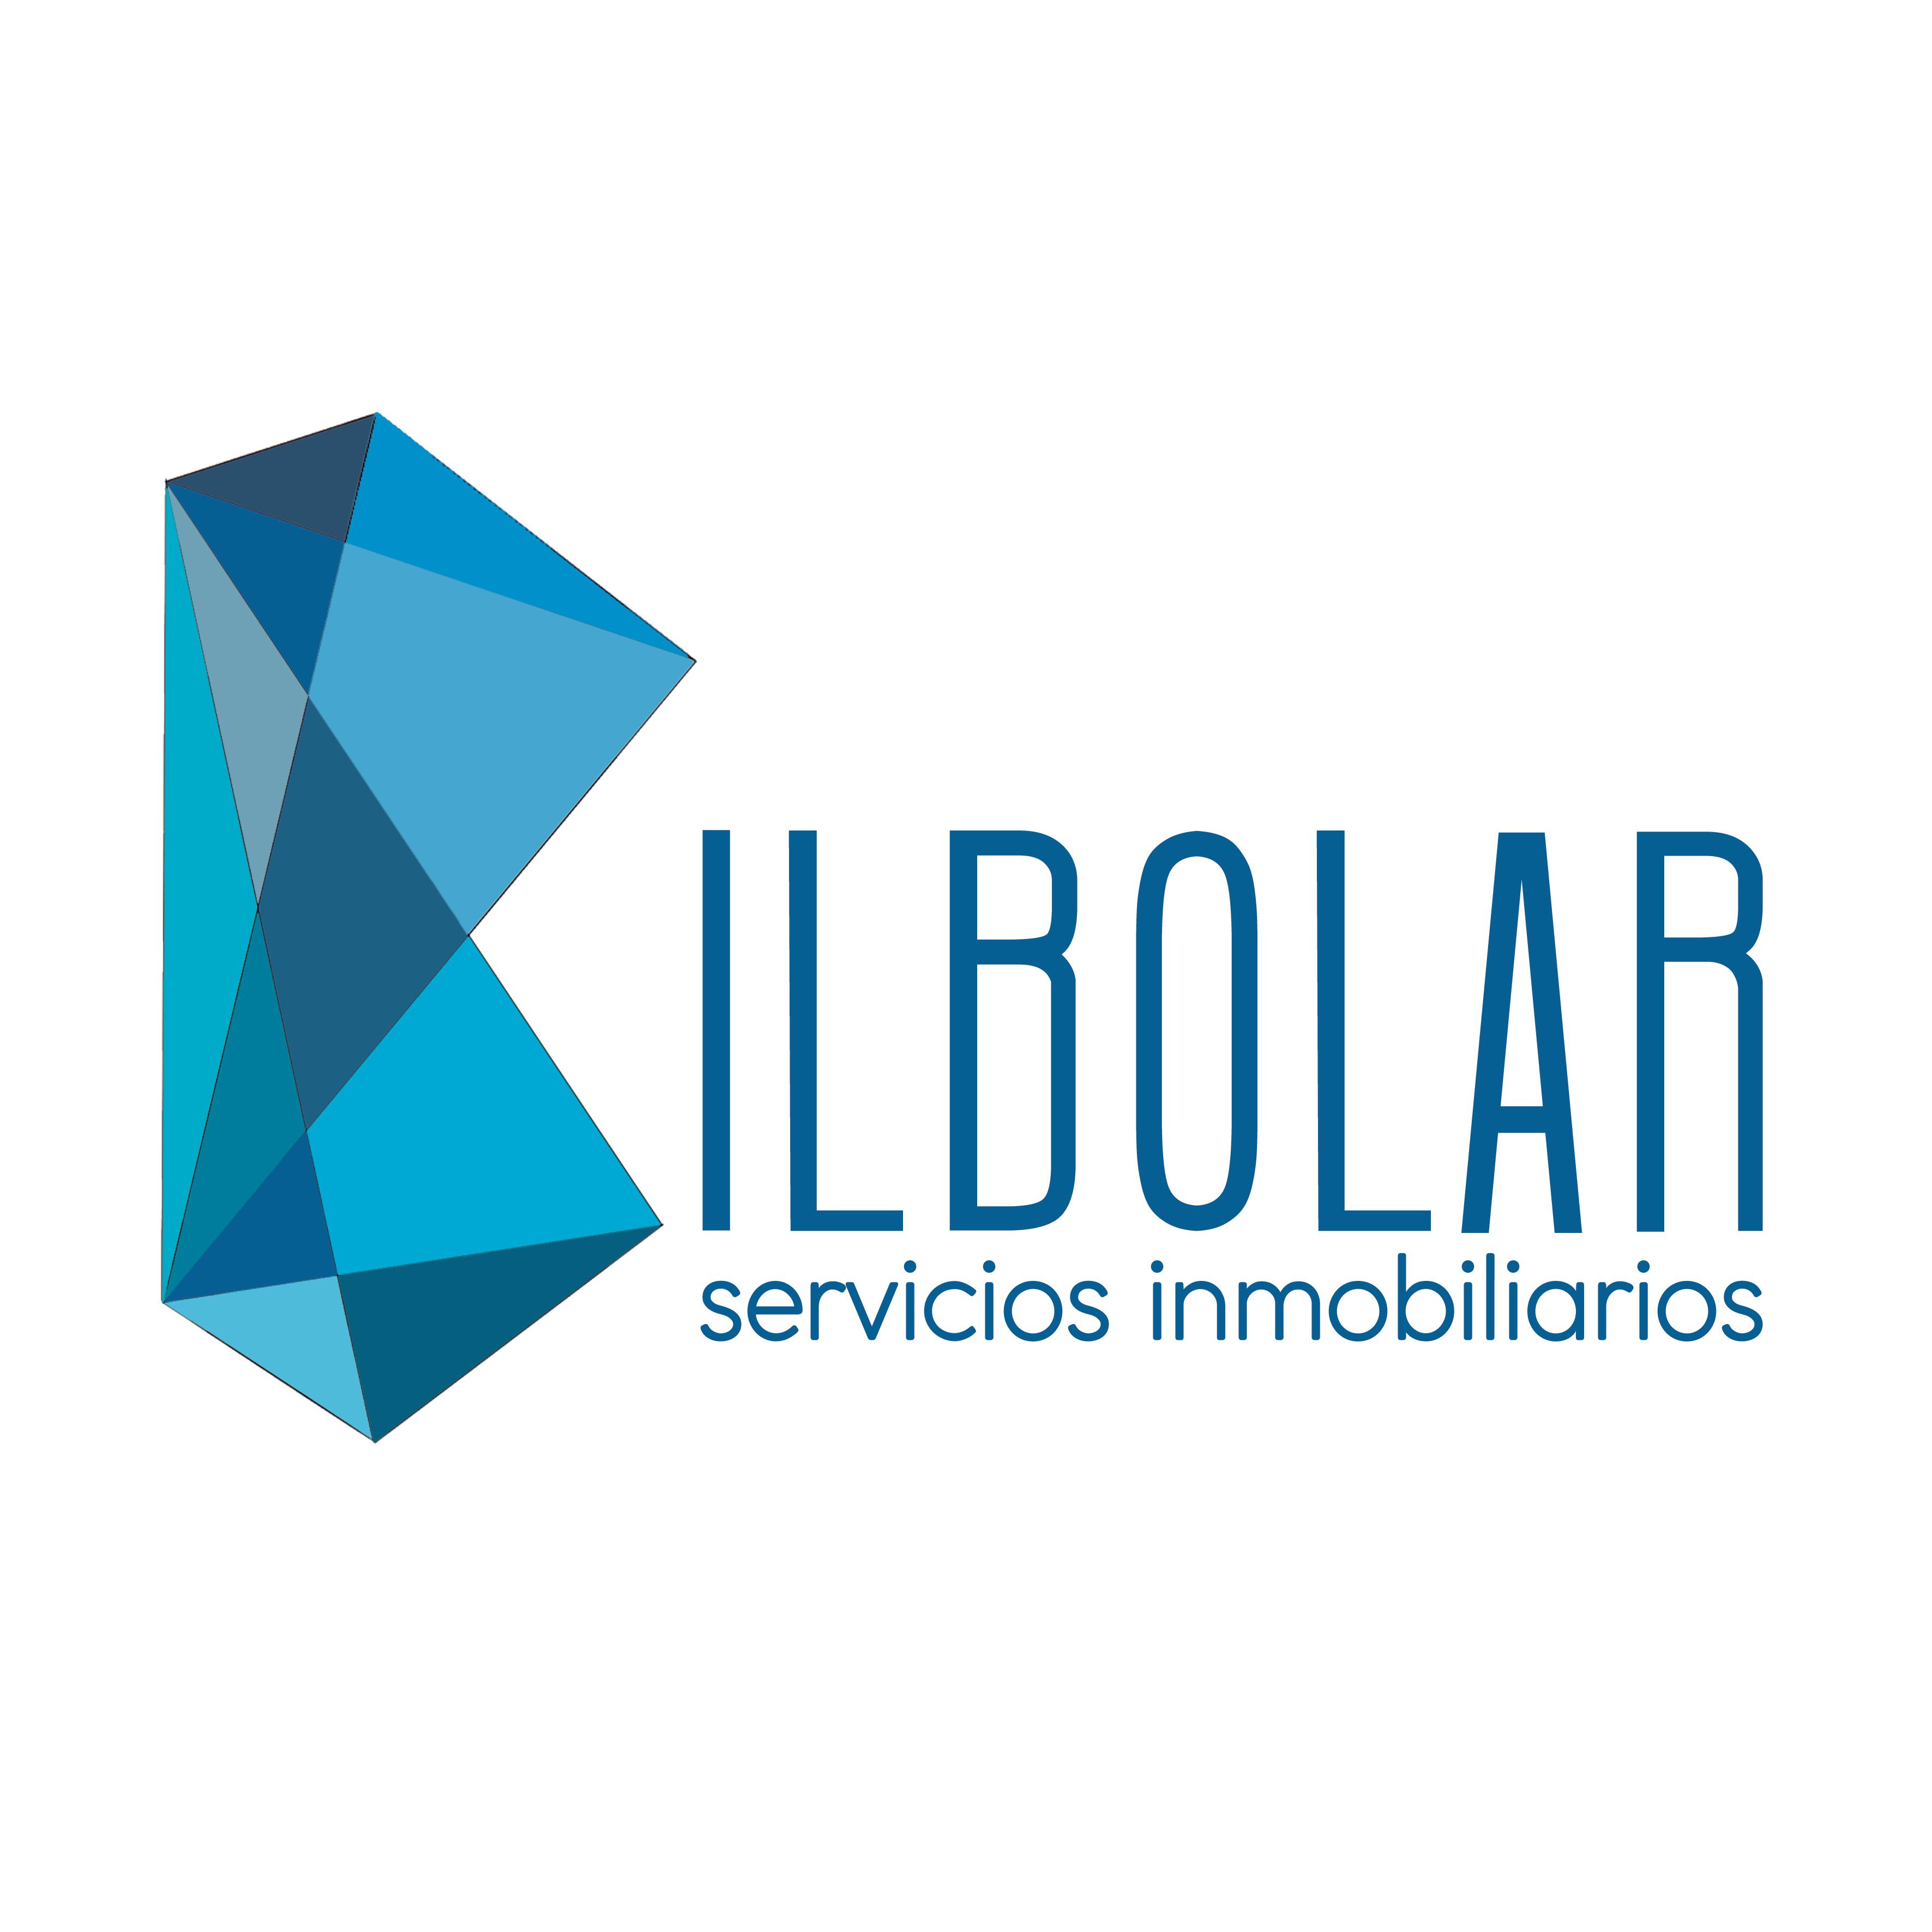 Bilbolar Servicios Inmobilarios Bilbao